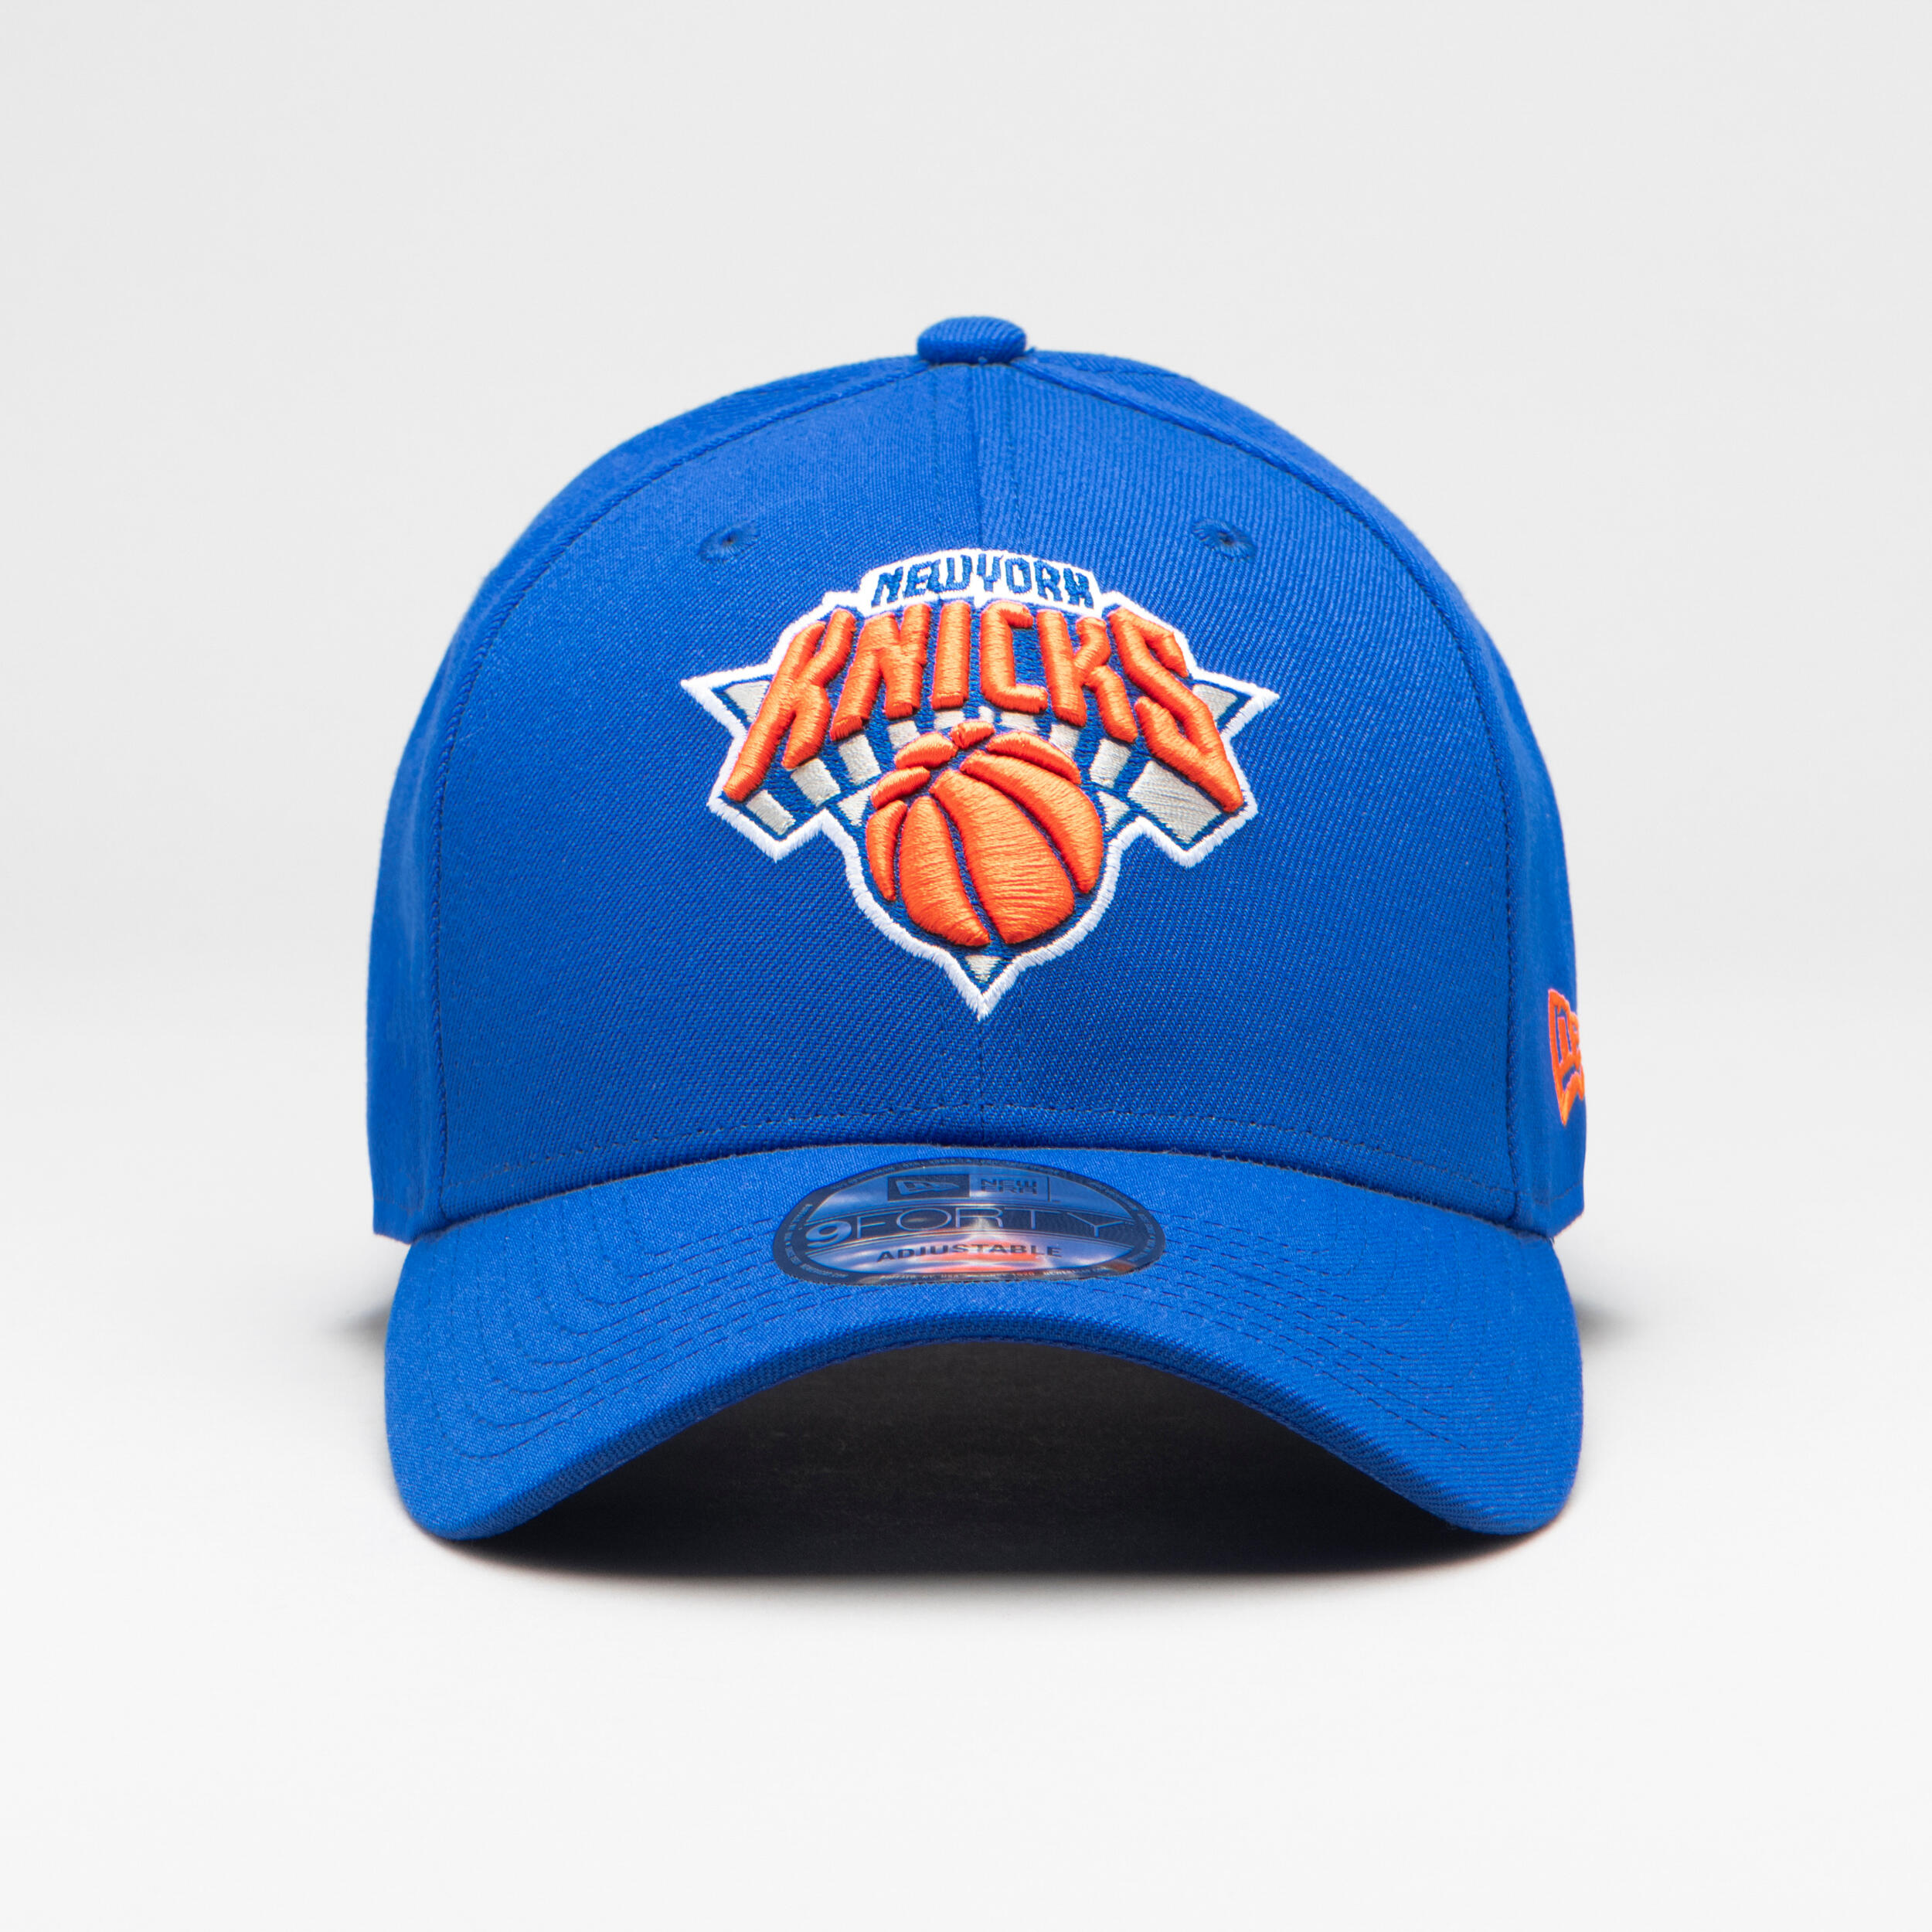 Men's/Women's Basketball Cap NBA - New York Knicks/Blue 1/7